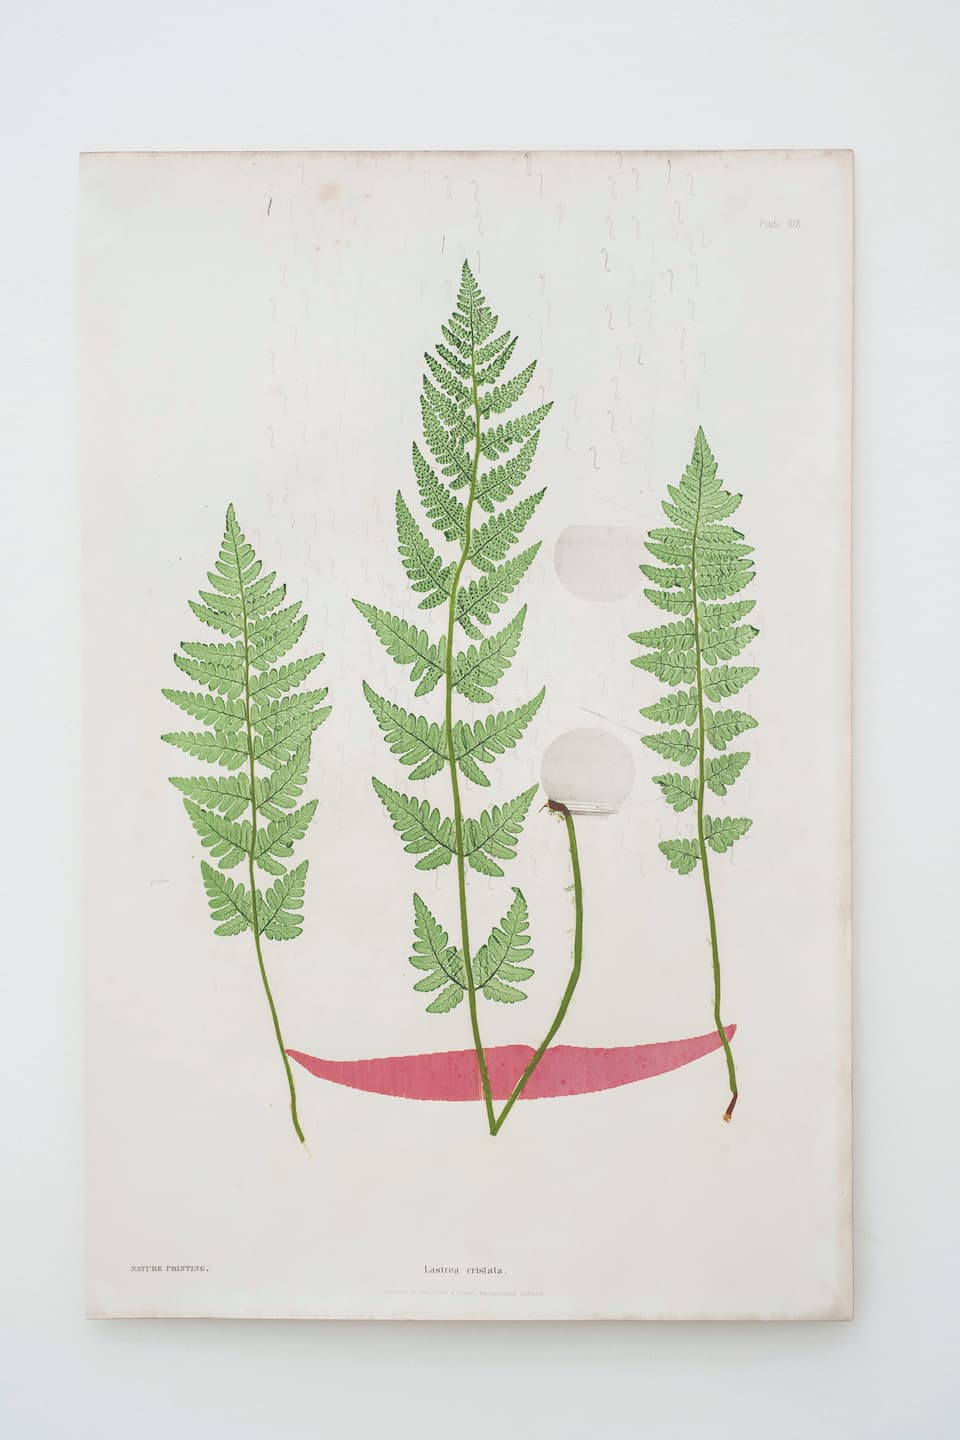 Lucy Skaer, The Green Man, 2018. Crayon et encre sur papier, 54,8 x 36,8 cm. Achat à la Galerie Peter Freeman, Inc., Paris. Collection Frac Bretagne. © droits réservés